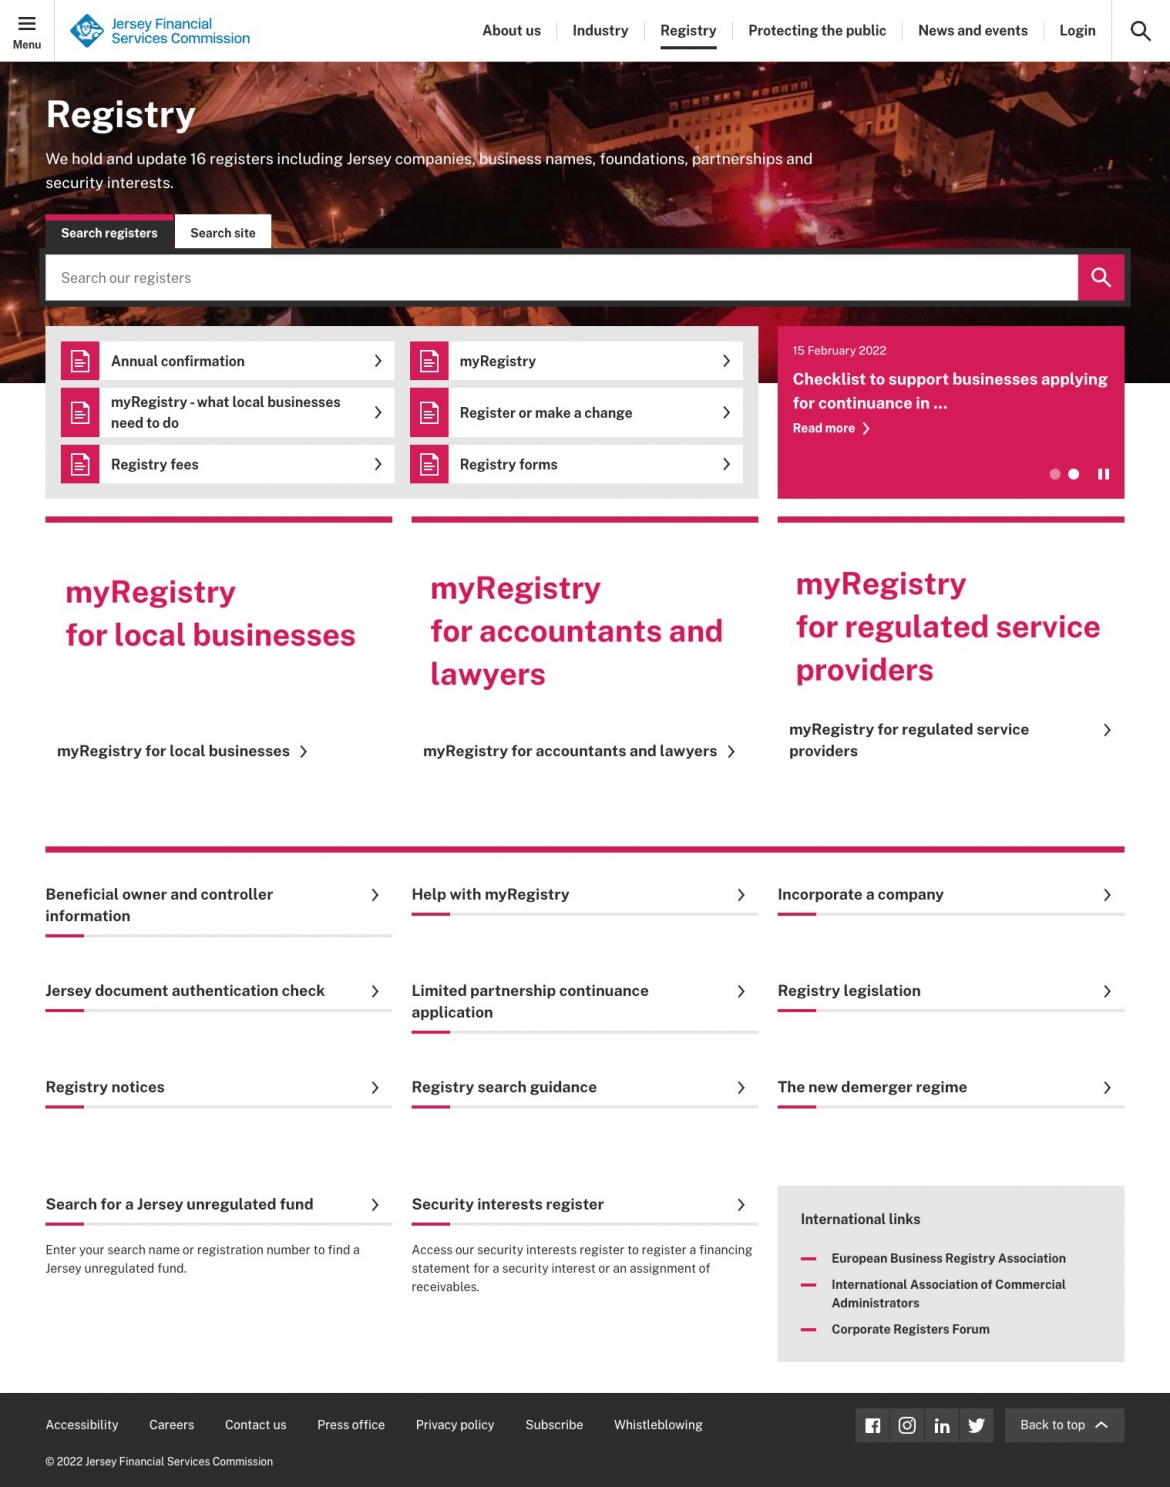 JFSC website screenshot of registry section